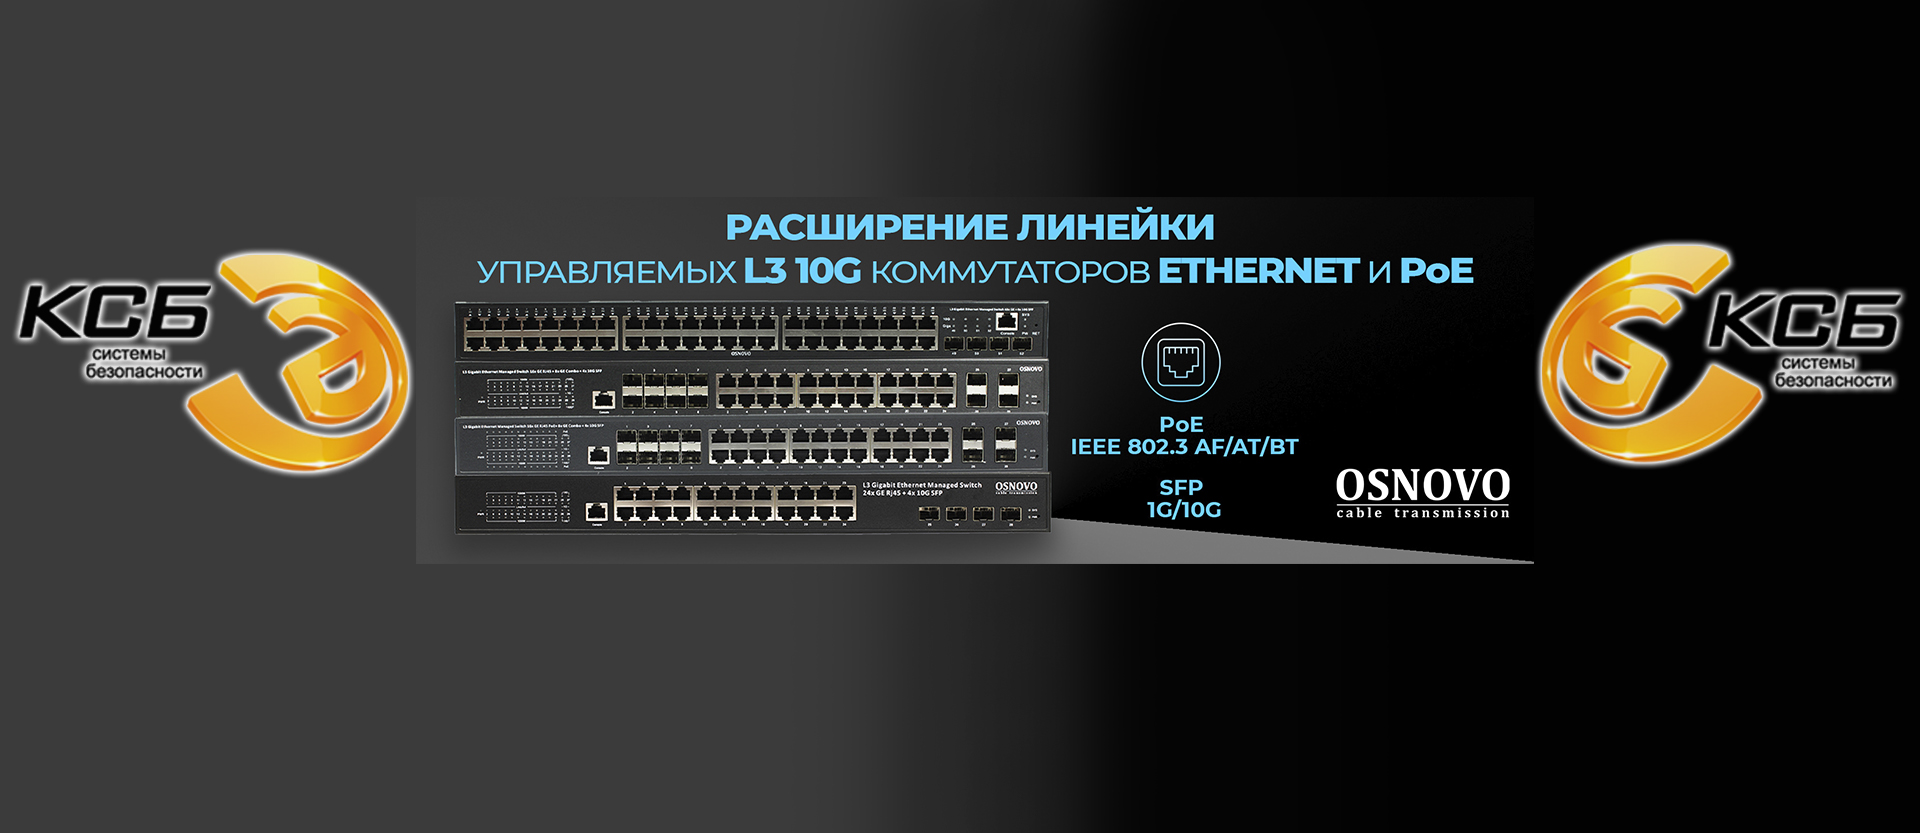 OSNOVO - Расширение линейки управляемых L3 10G коммутаторов Ethernet и PoE